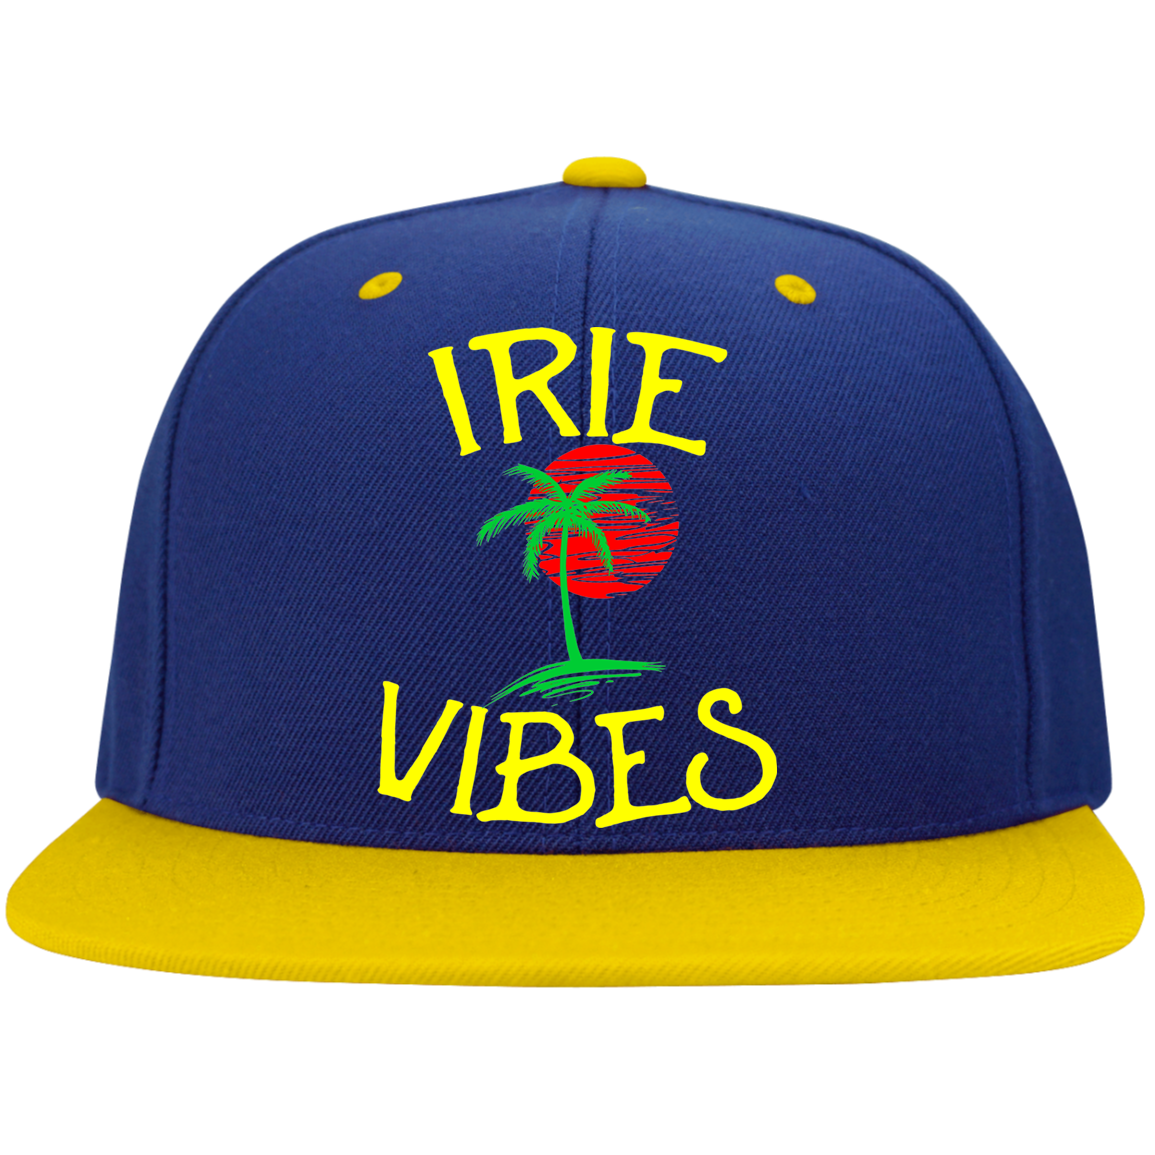 Irie Vibes Snapback Caps